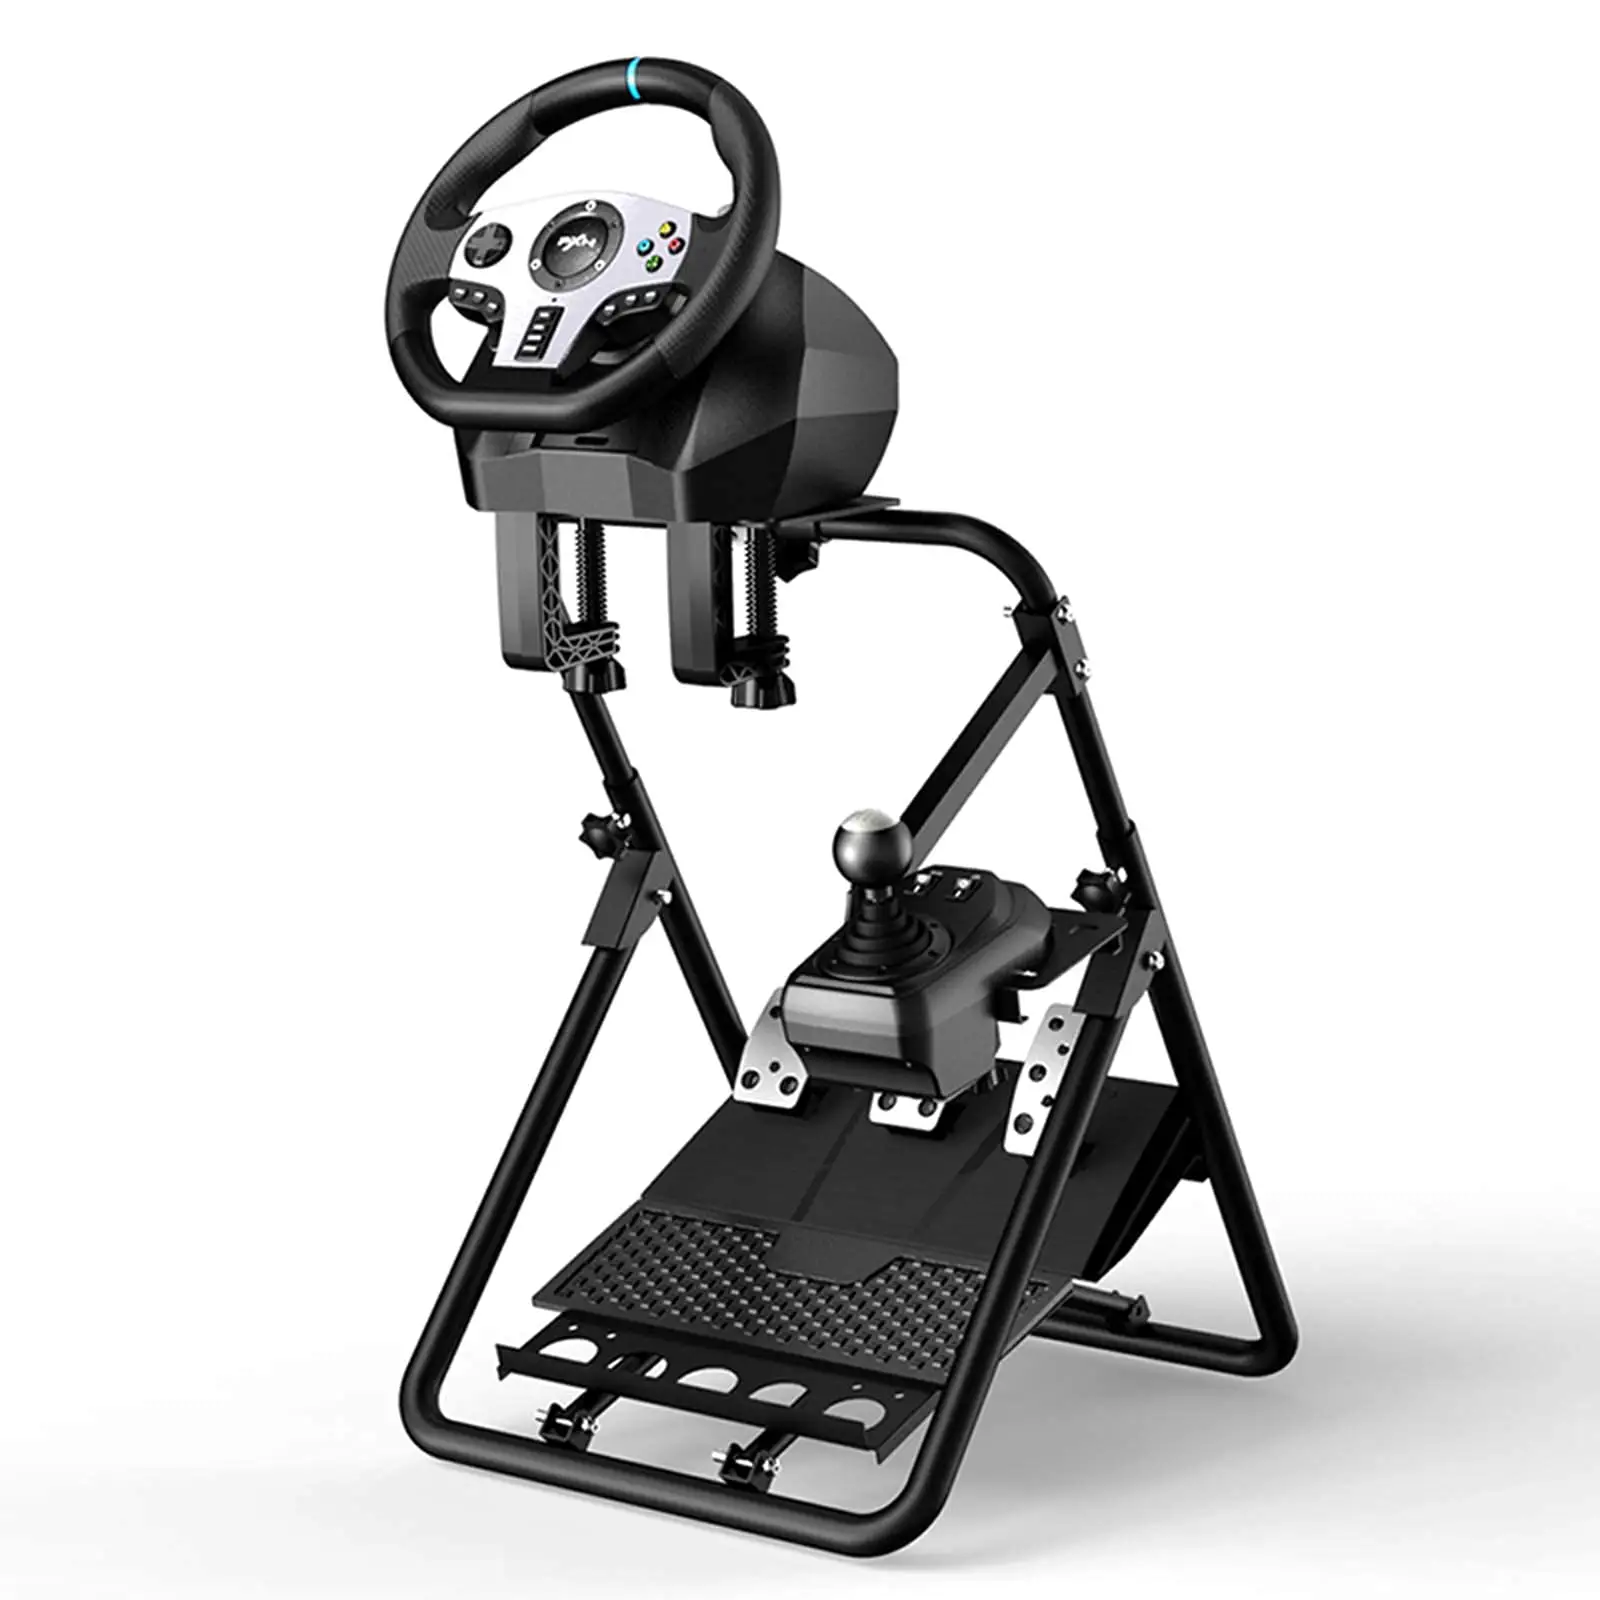 PXN V9 Gaming Steering Wheel Stand A9 Model Foldable For Logitech Thrustmaster G25 G27 G29 G920 G923 Gt500 T300rs